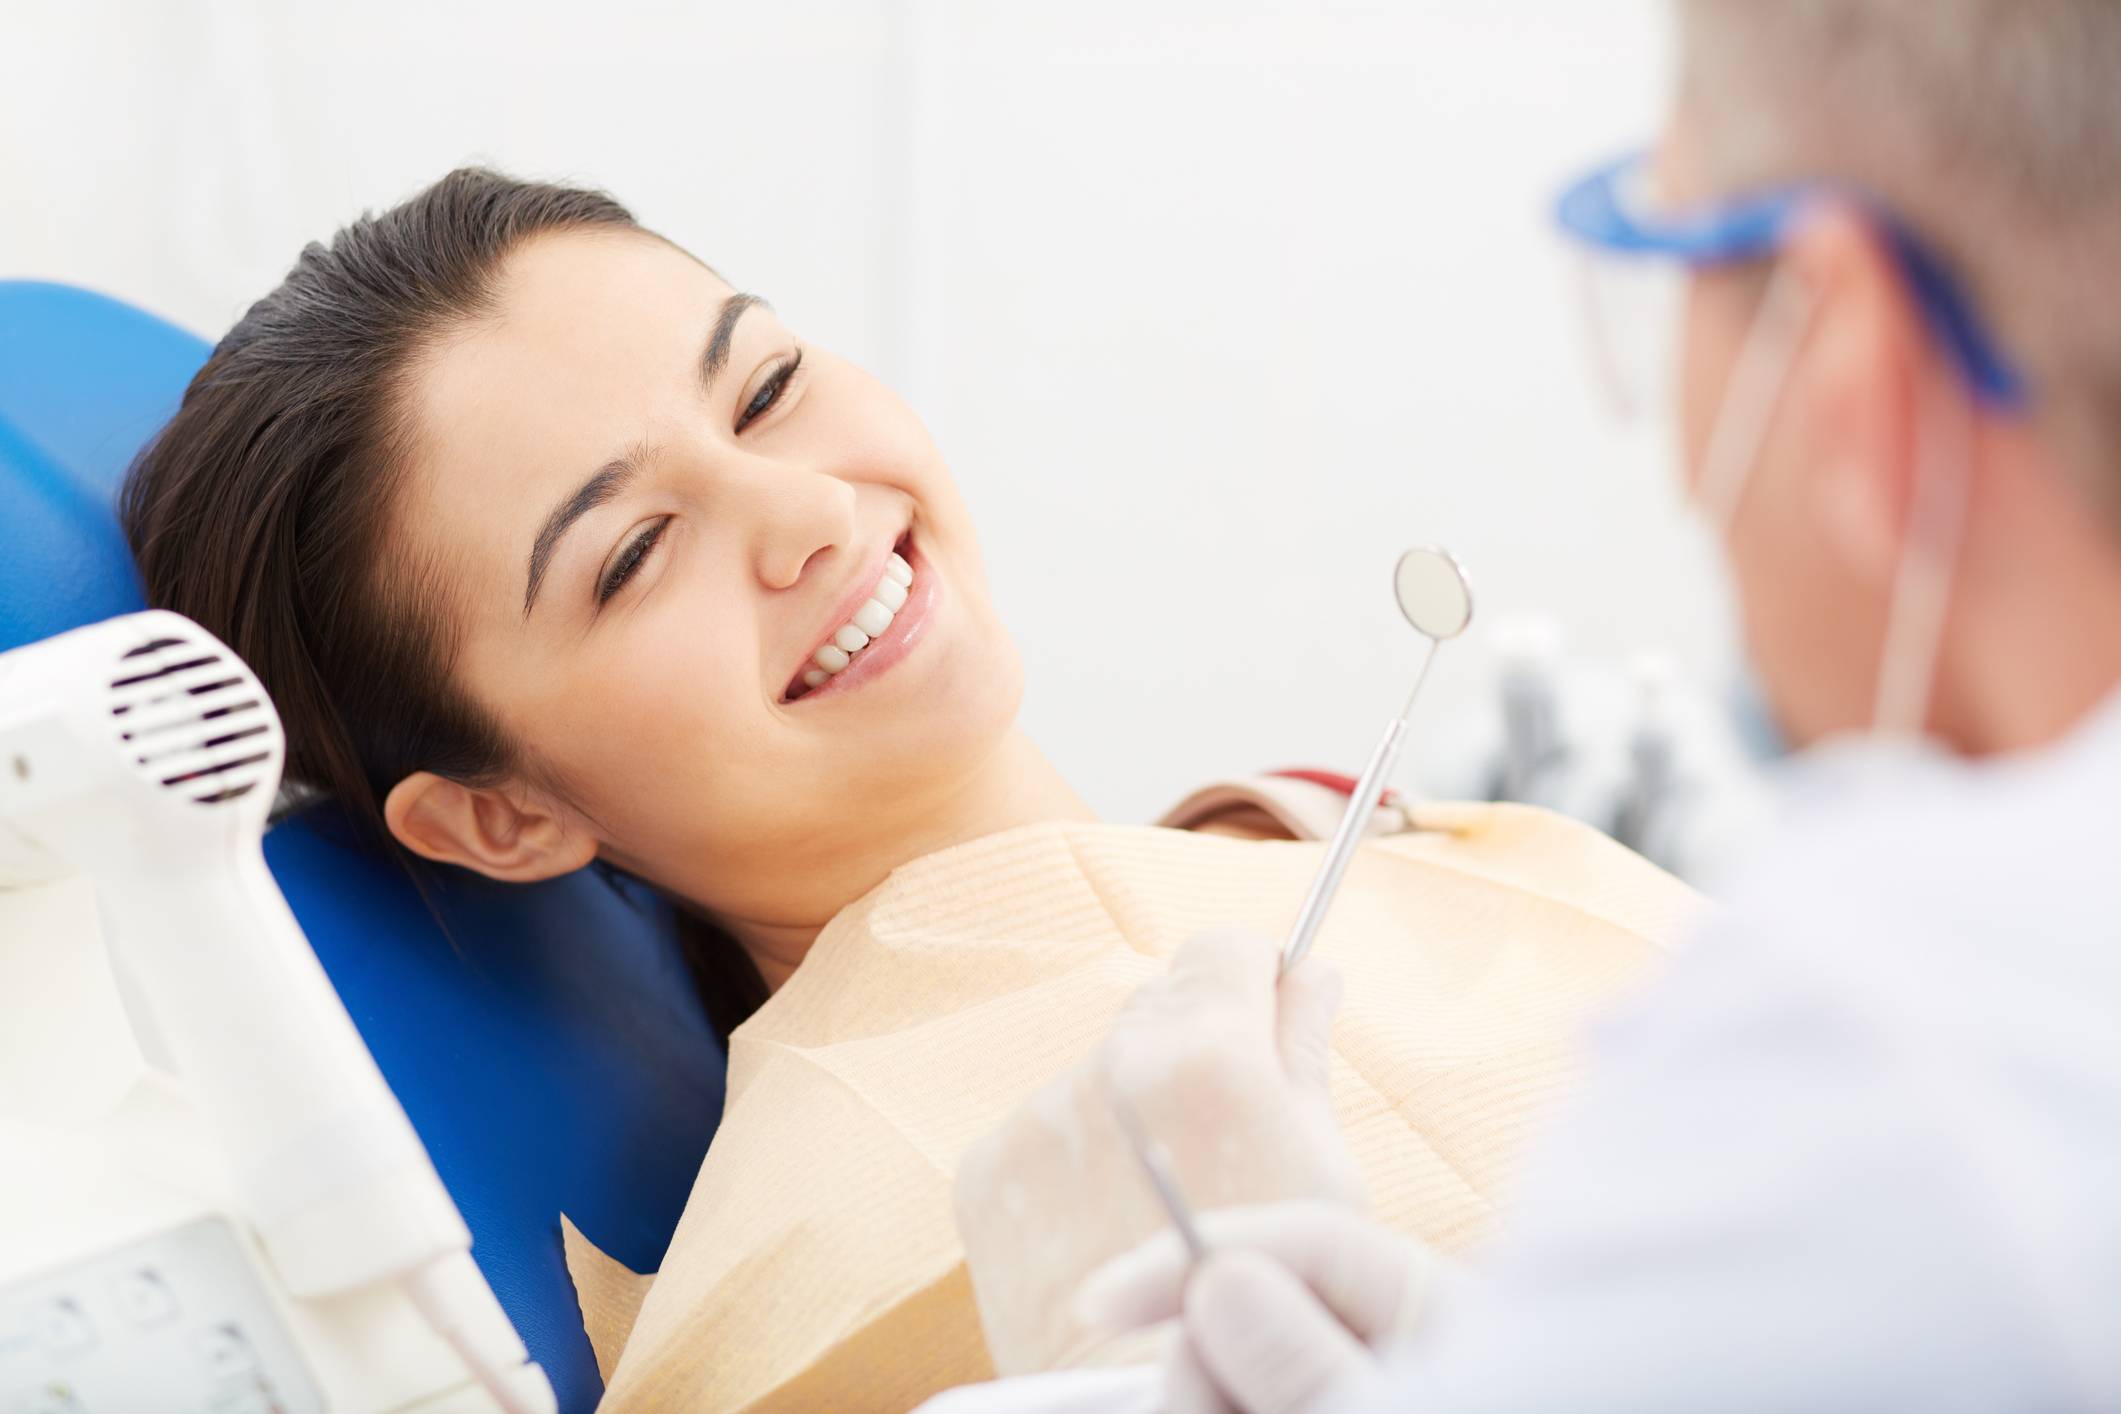 Лечение зубов во время грудного вскармливания в спб - в отделении стоматологии атрибьюти